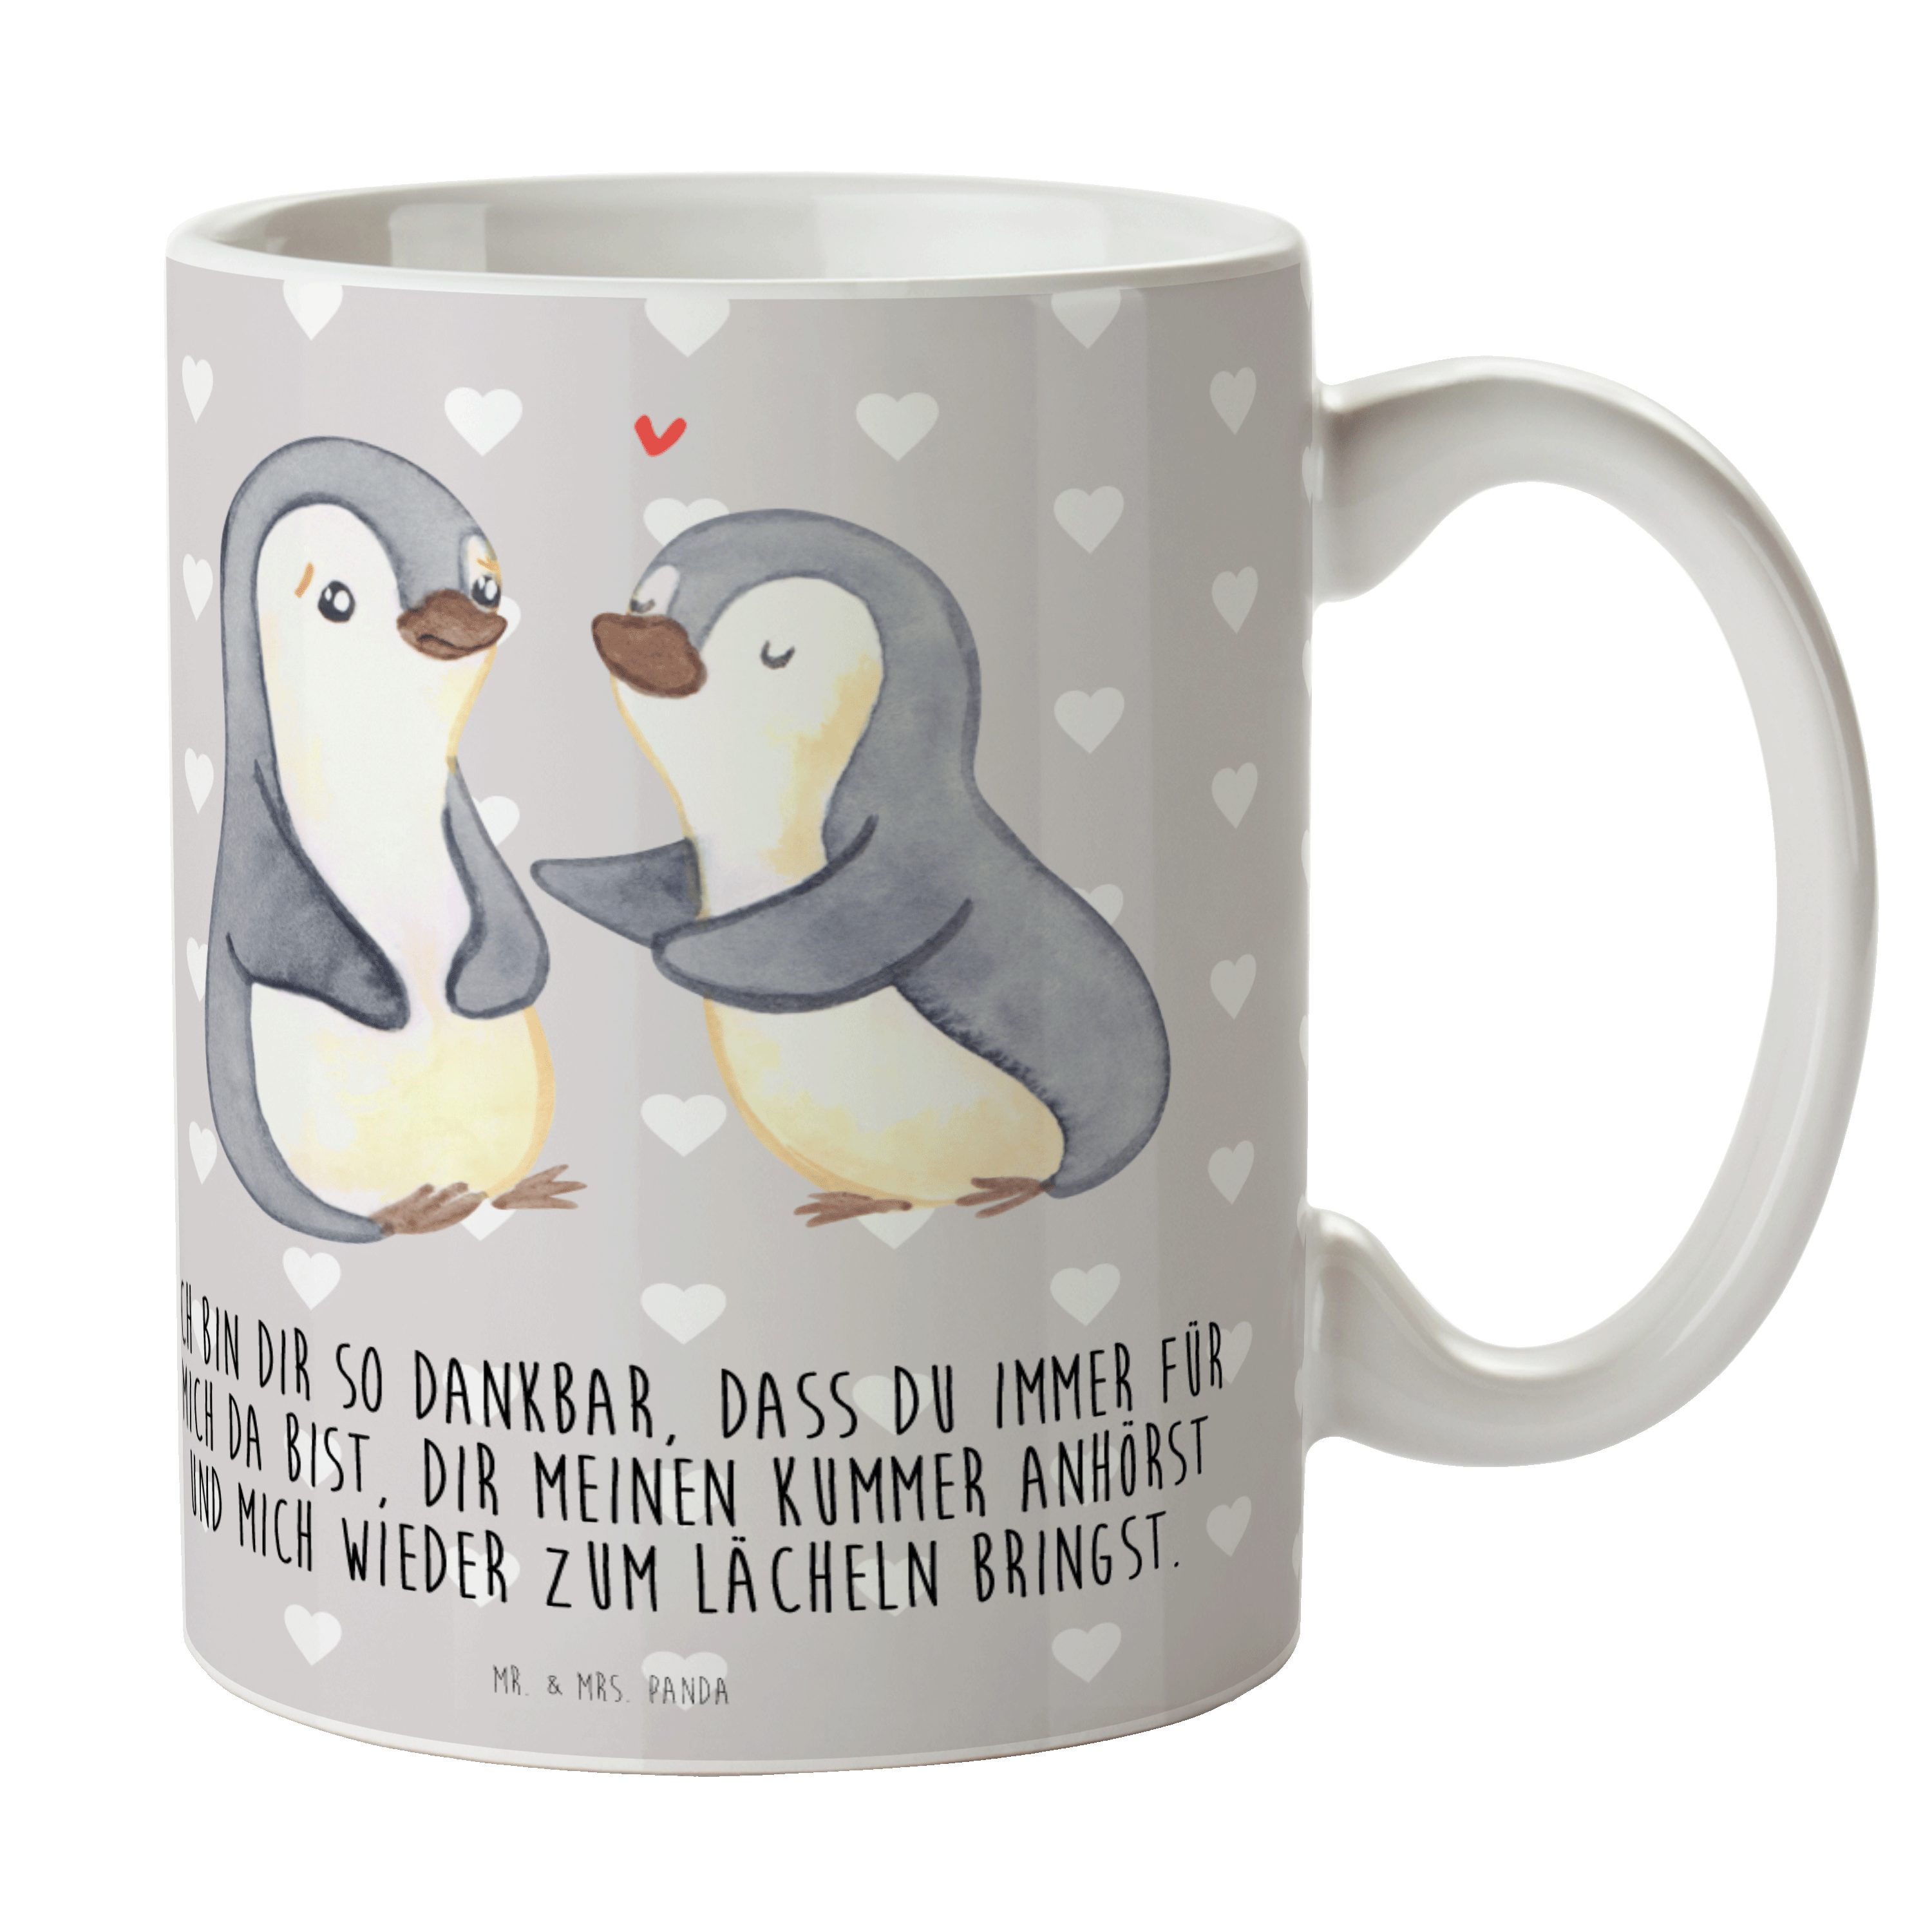 Mr. & Mrs. Panda Tasse Pinguine trösten - Grau Pastell - Geschenk, Tasse, Liebesgeschenk, Li, Keramik